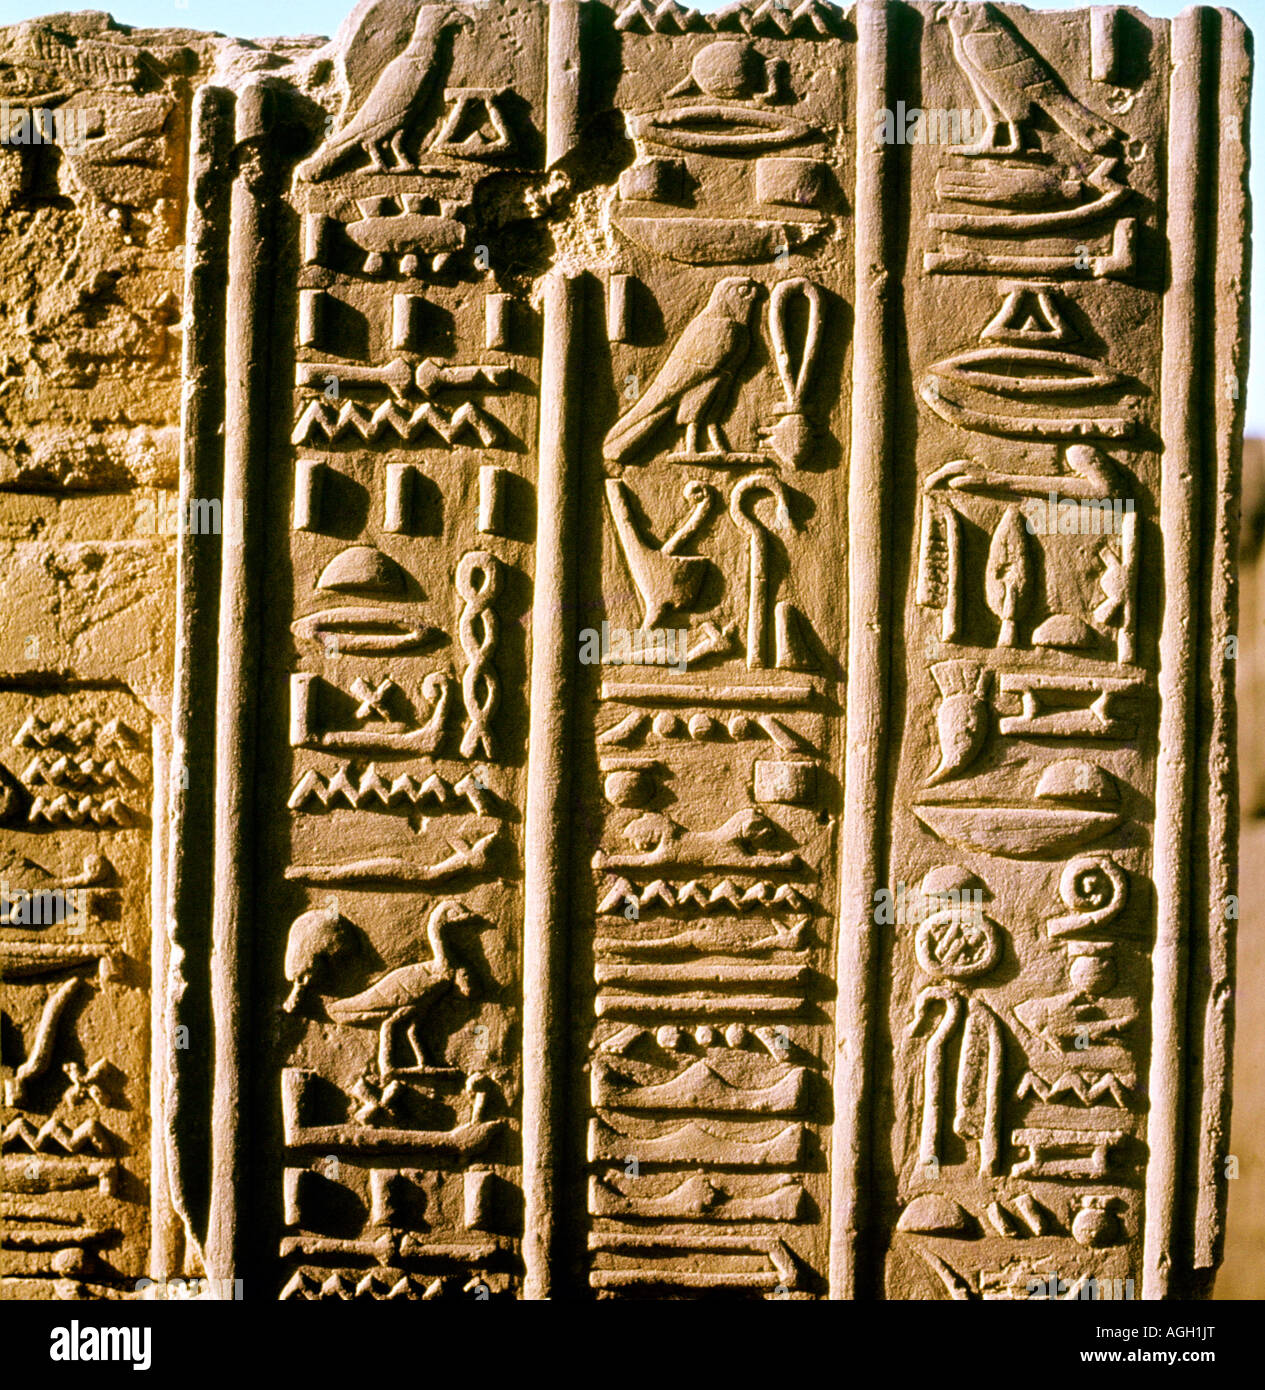 Hieroglyphics from Kom Ombo, Egypt Stock Photo